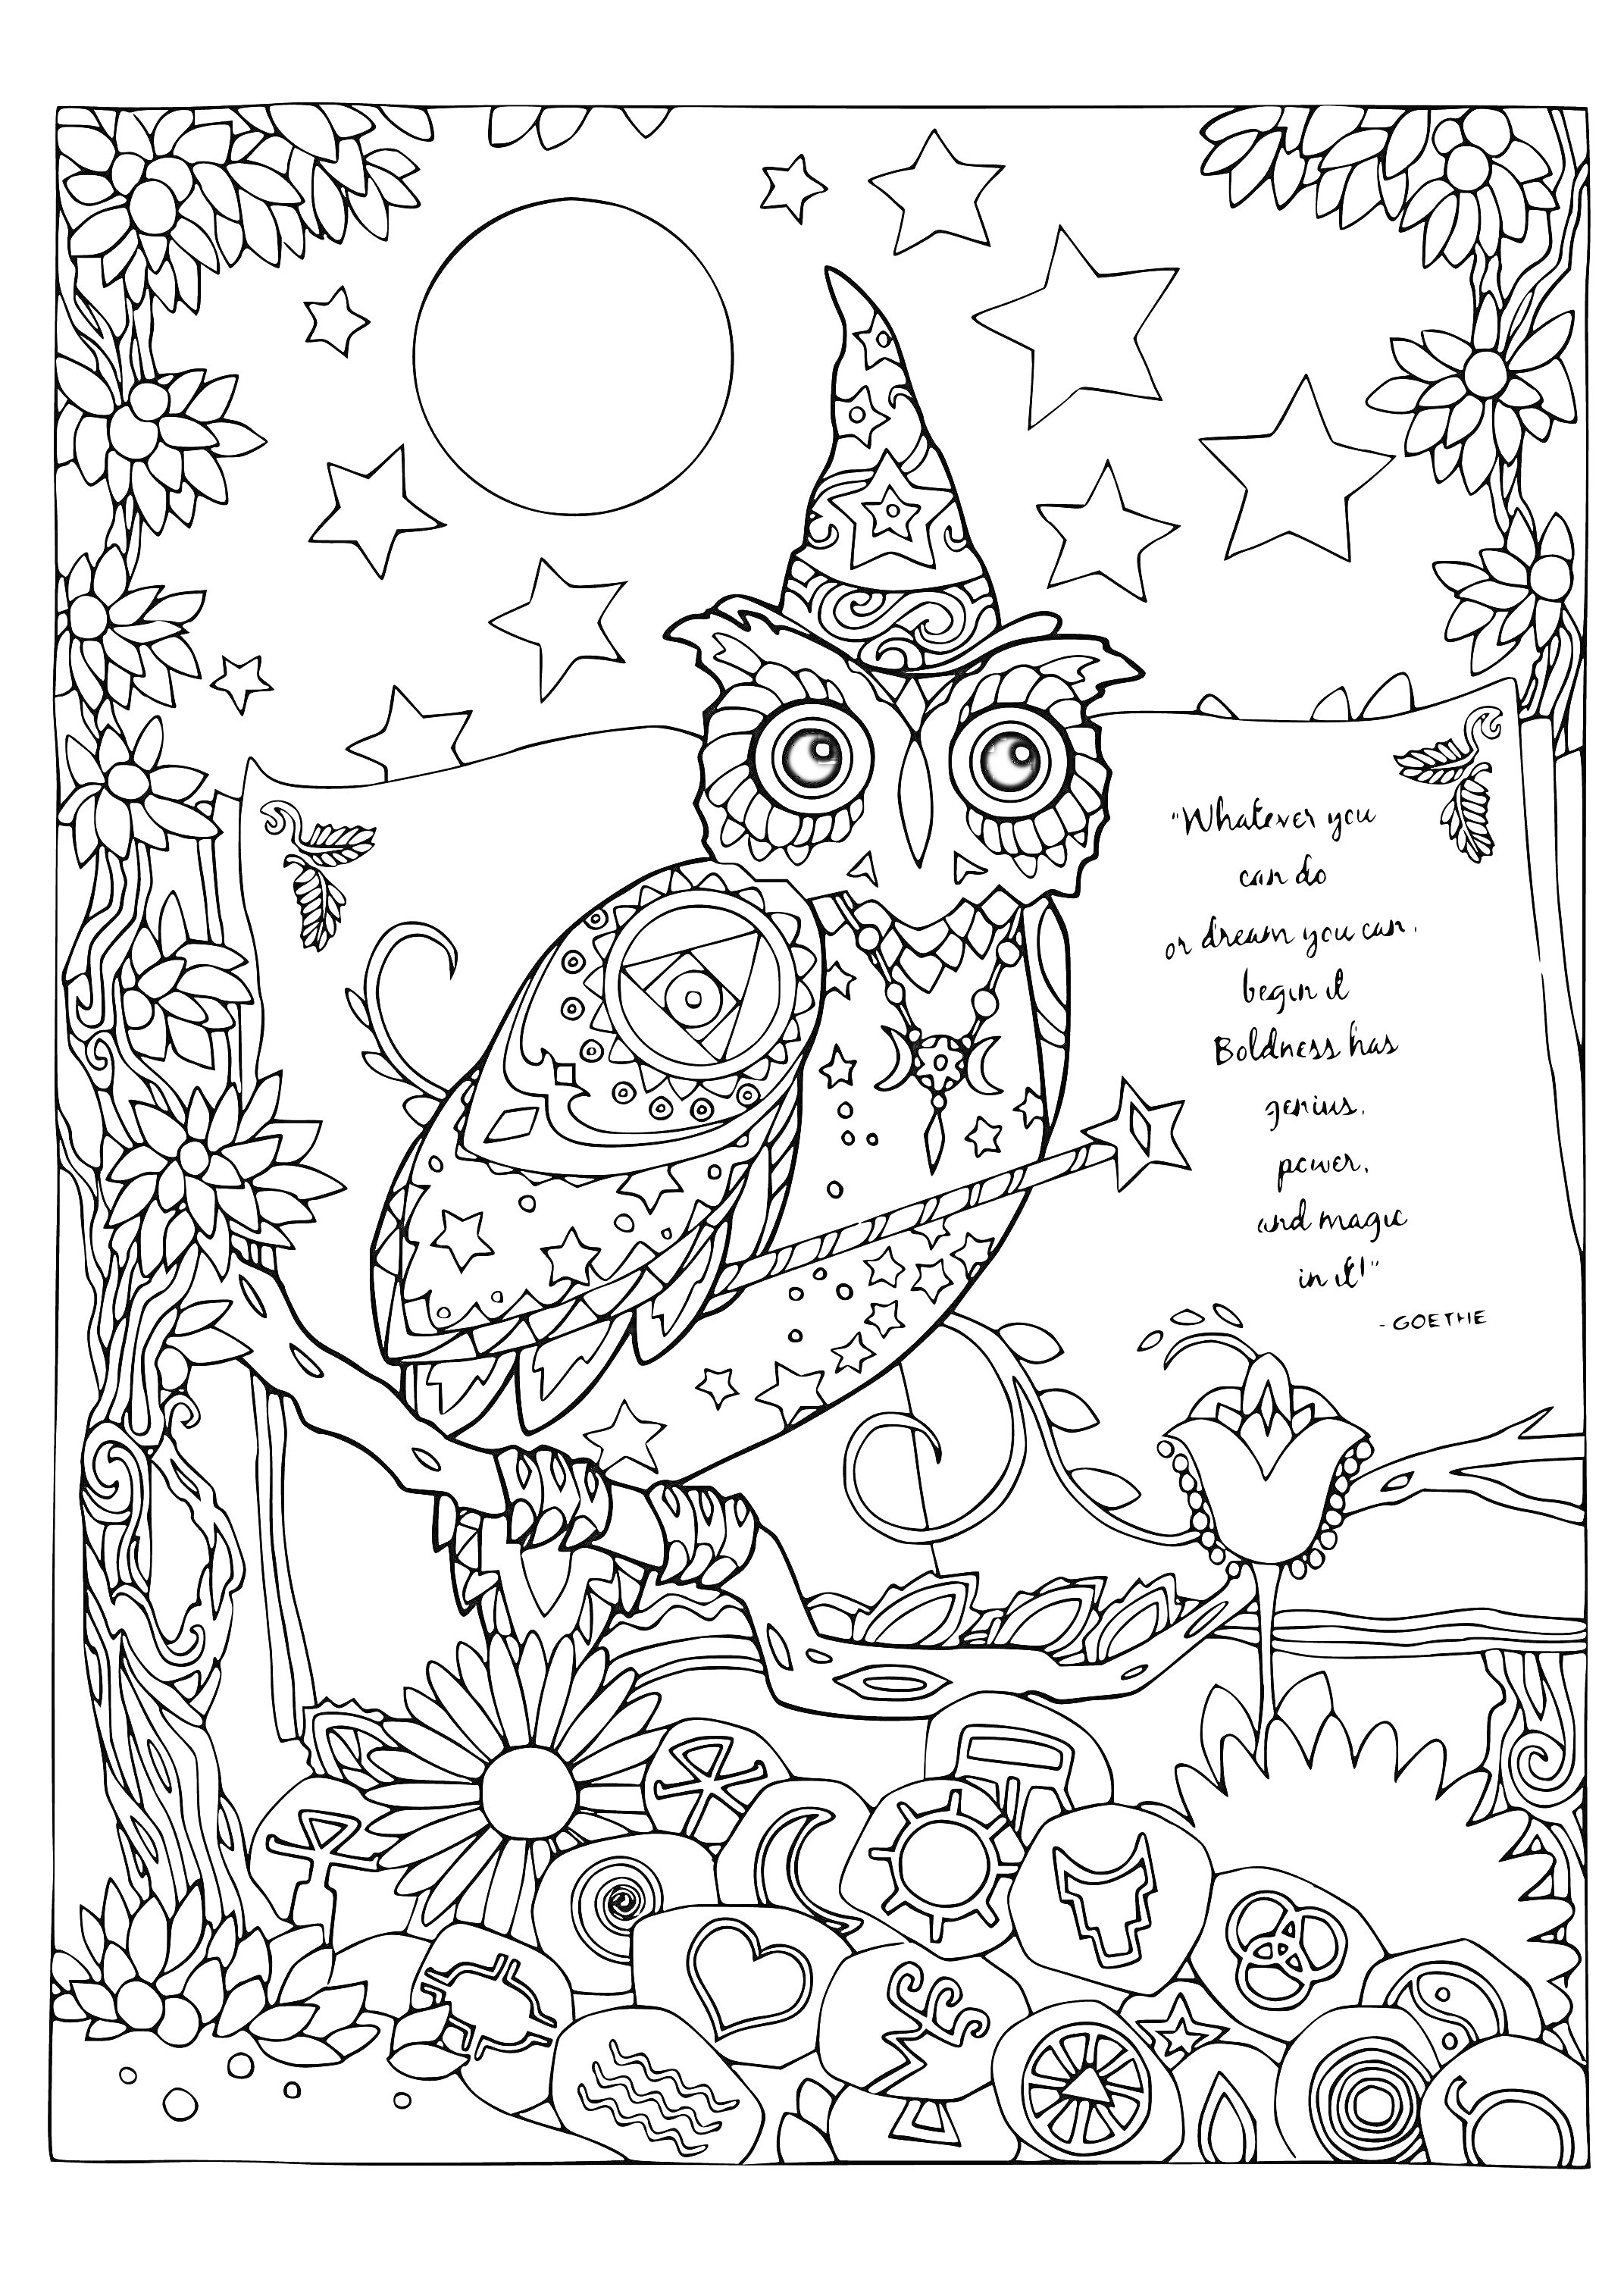 Узорчатая сова в колпаке на ветке с цветами и звездами, с мотивирующей надписью